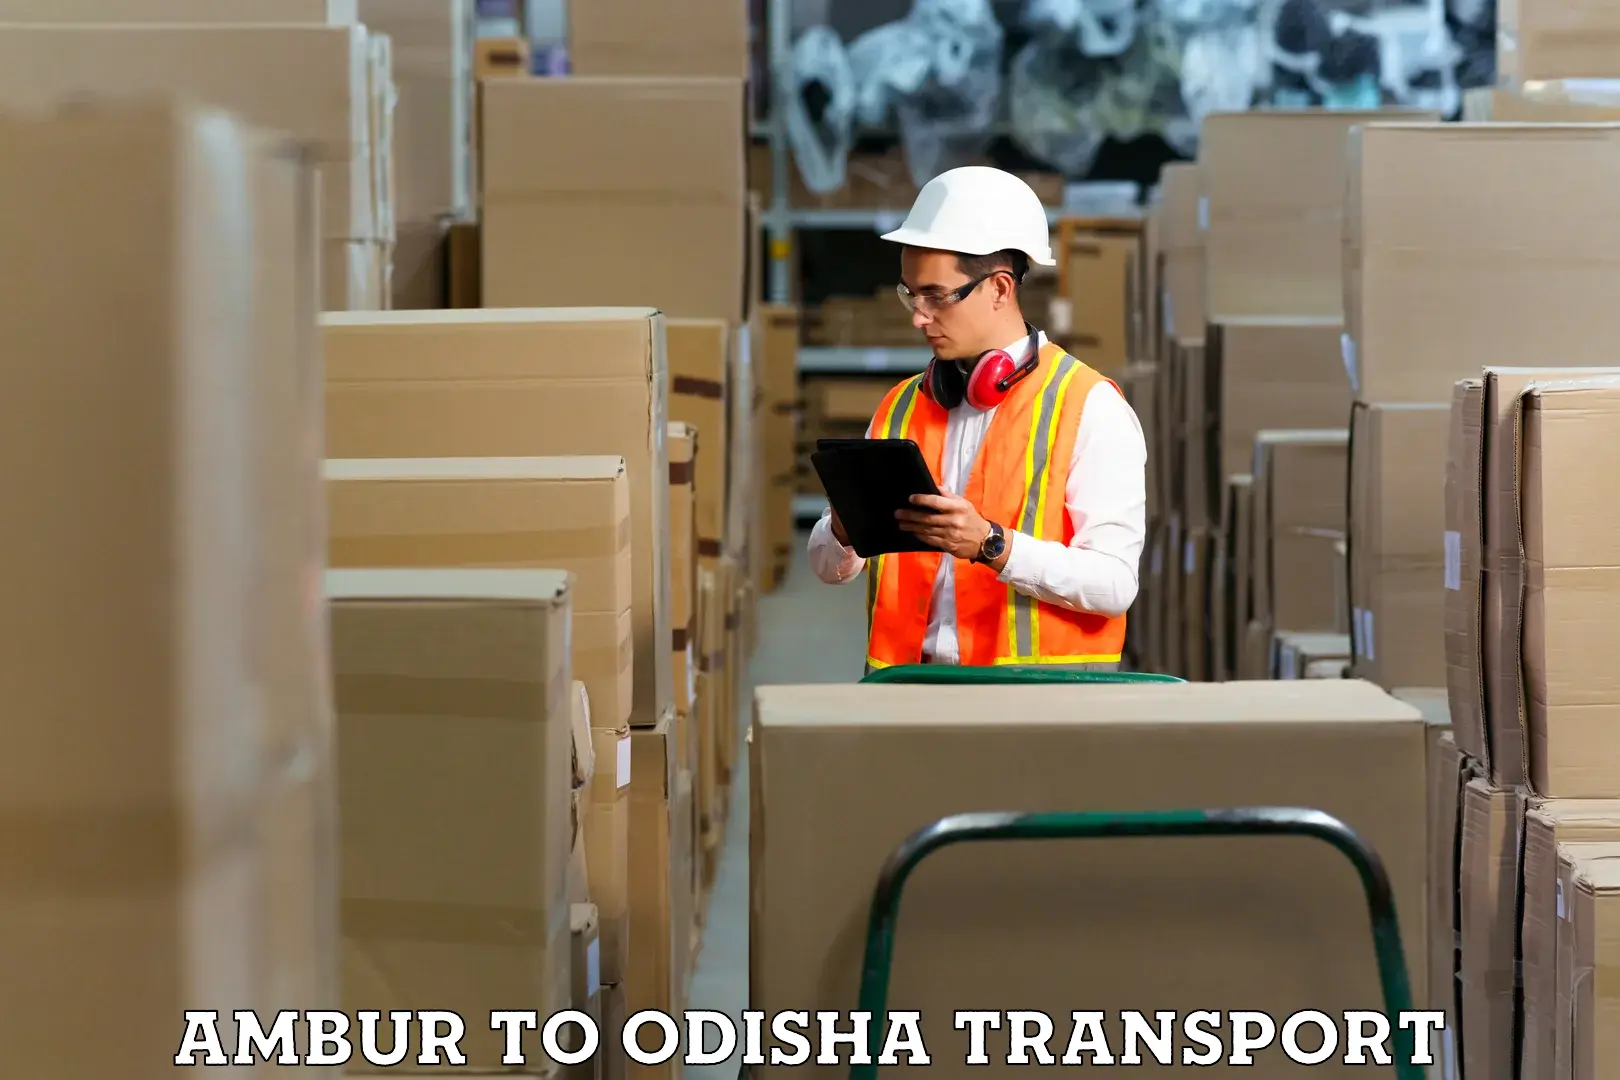 Part load transport service in India Ambur to Daspalla